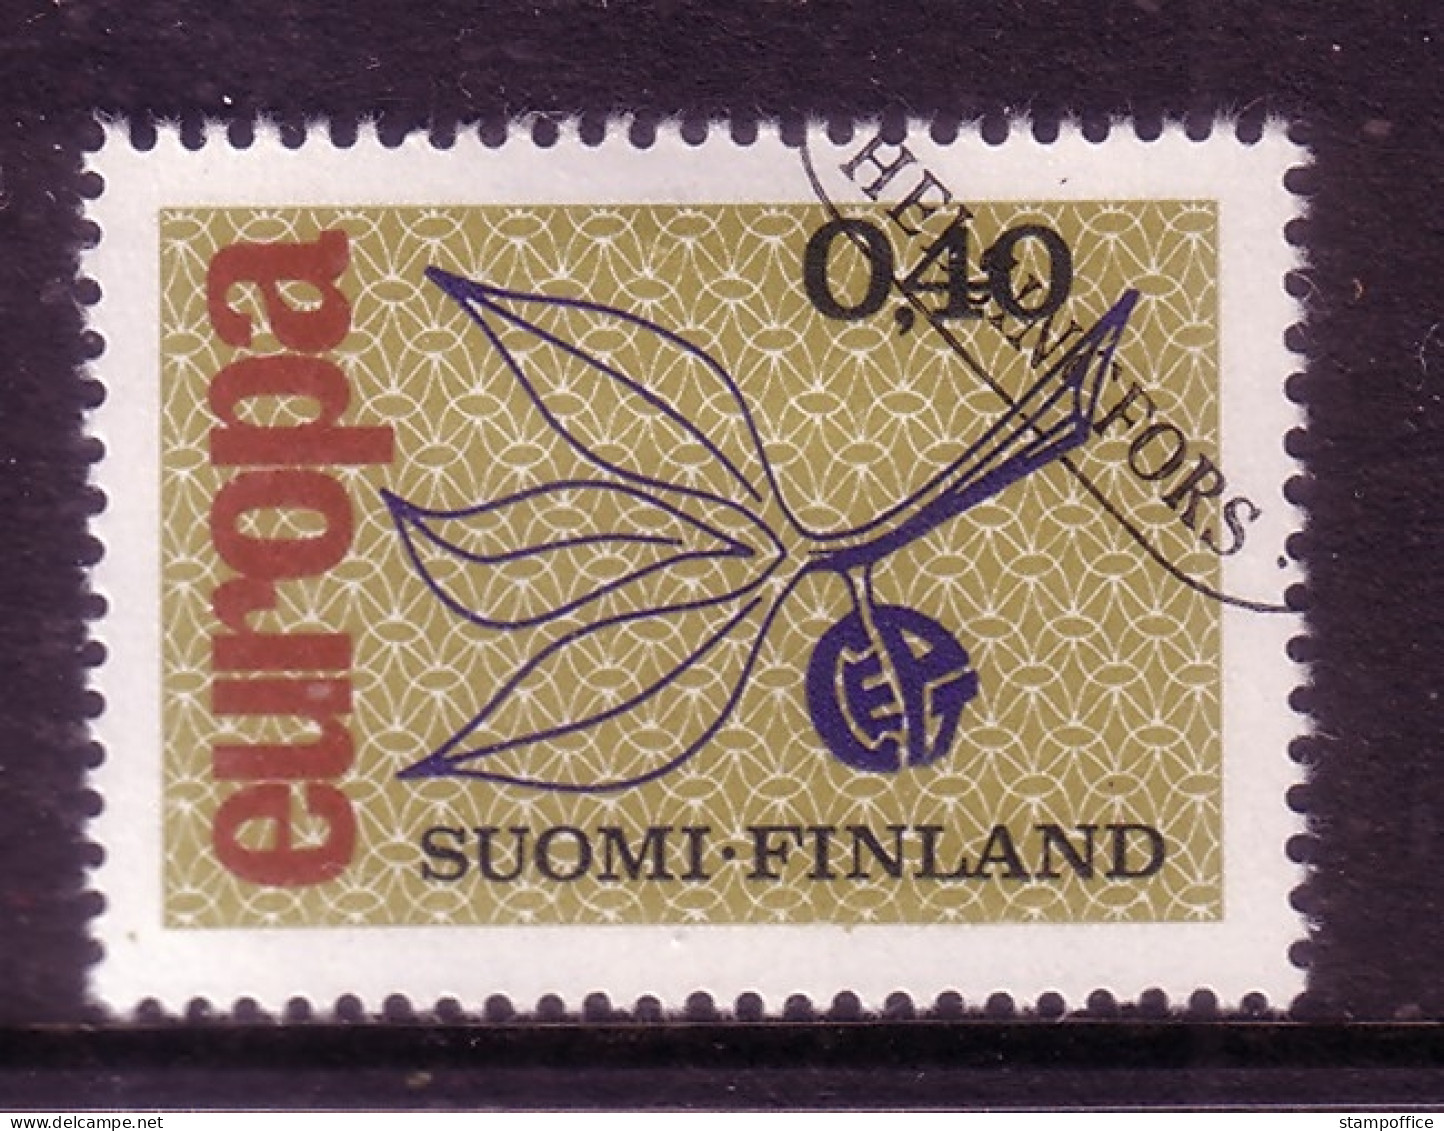 FINNLAND MI-NR. 608 O EUROPA 1965 - ZWEIG - 1965